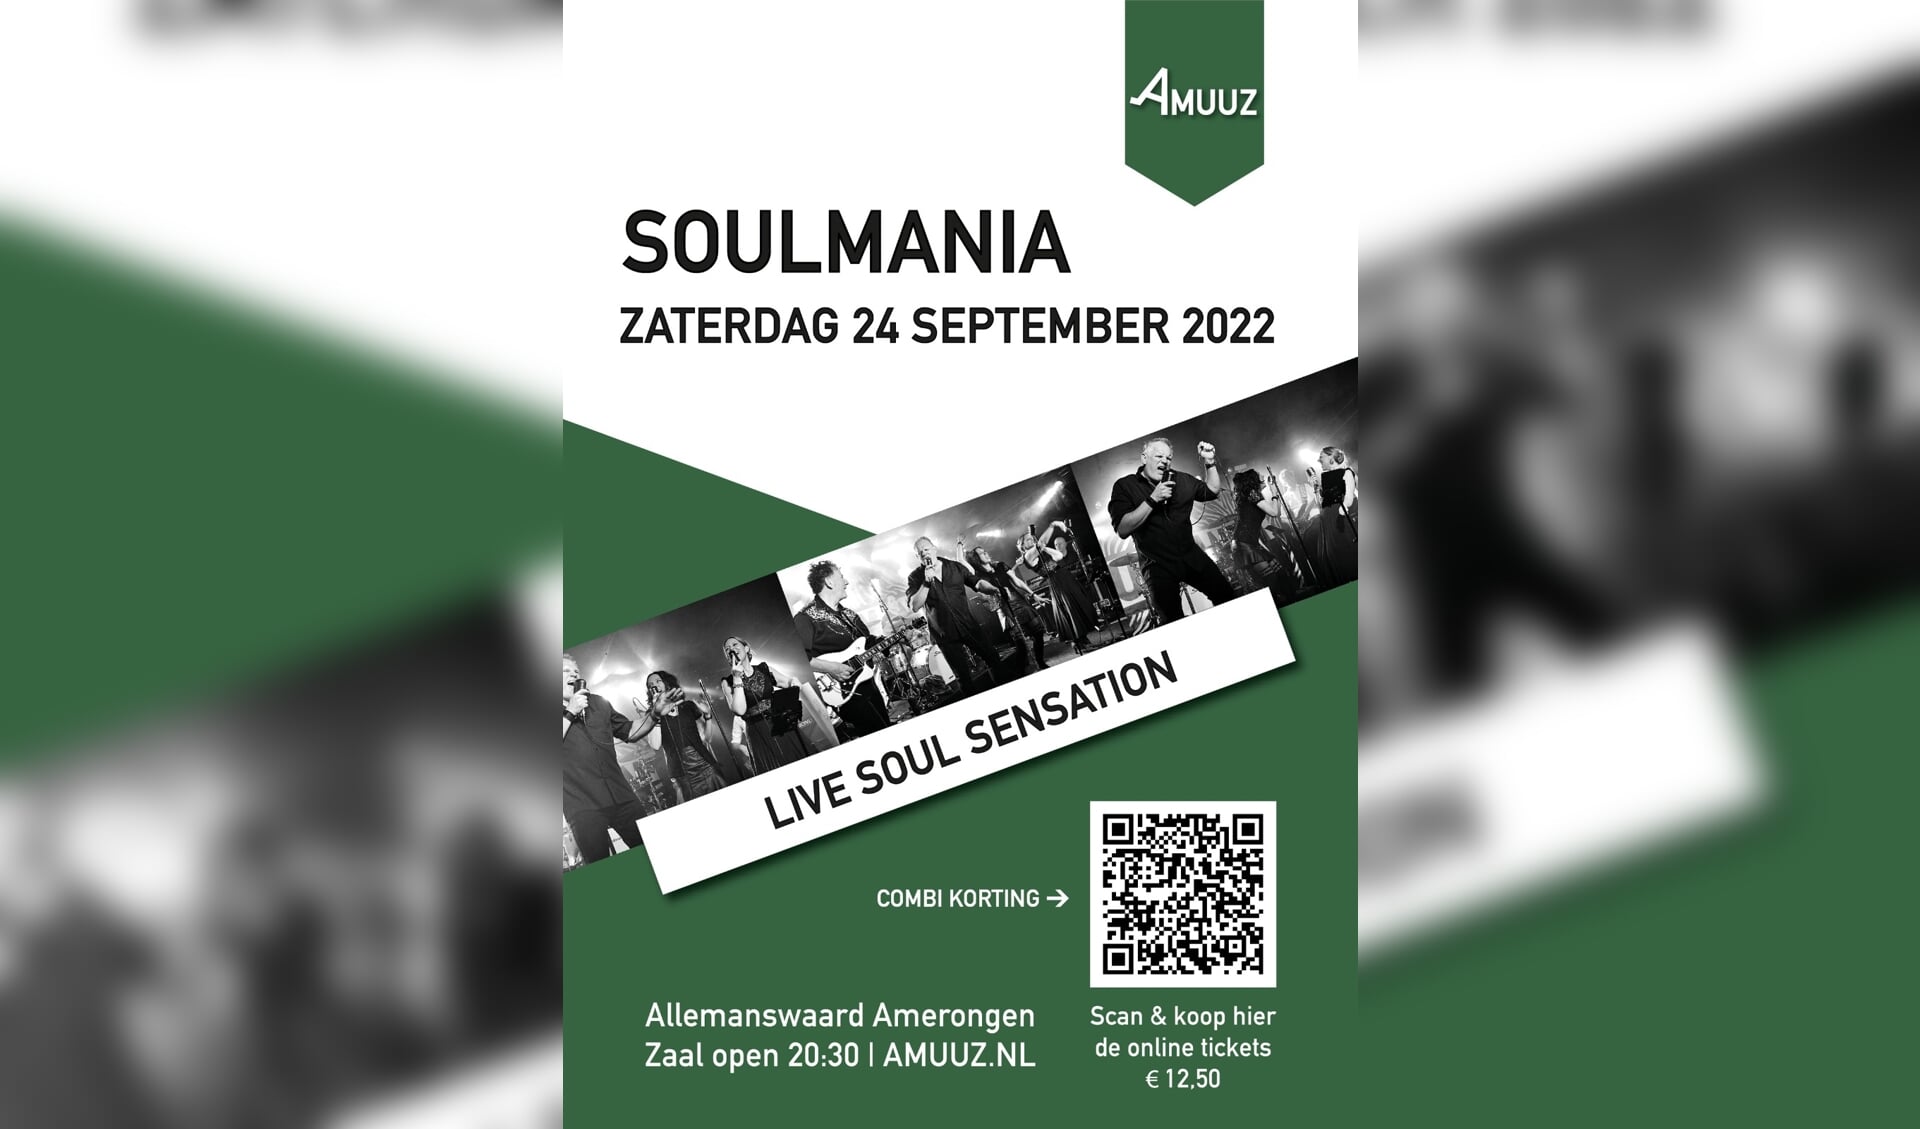 Amuuz + Bibliotheek ZOUT organiseren Soulmania